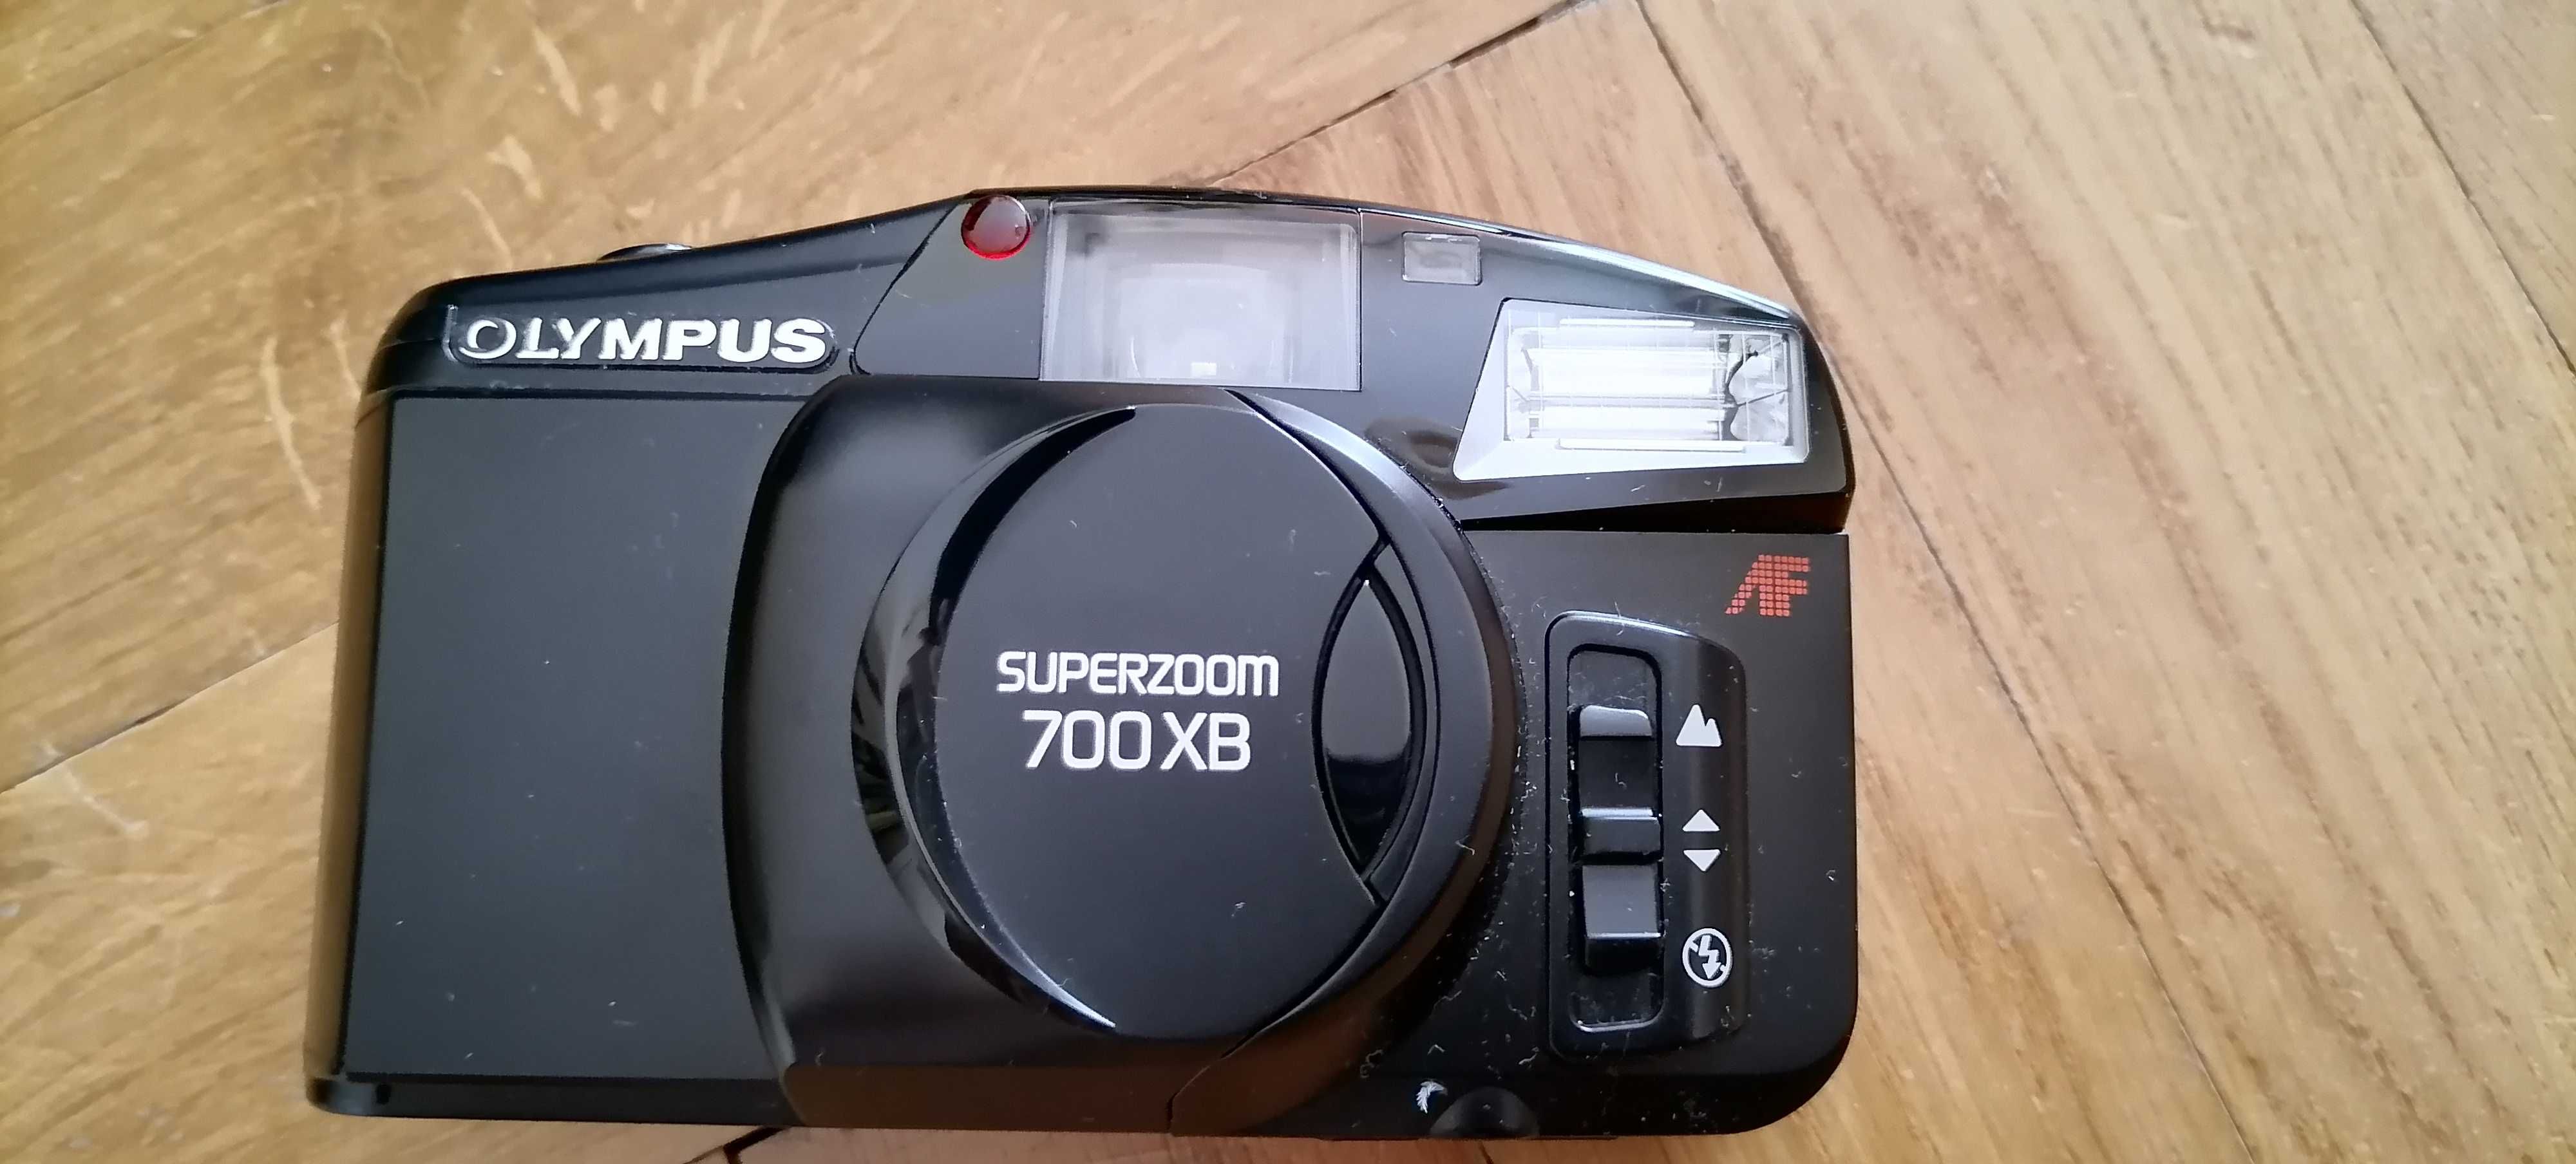 Sprzedam aparat fotograficzny Olympus Superzoom 700xB